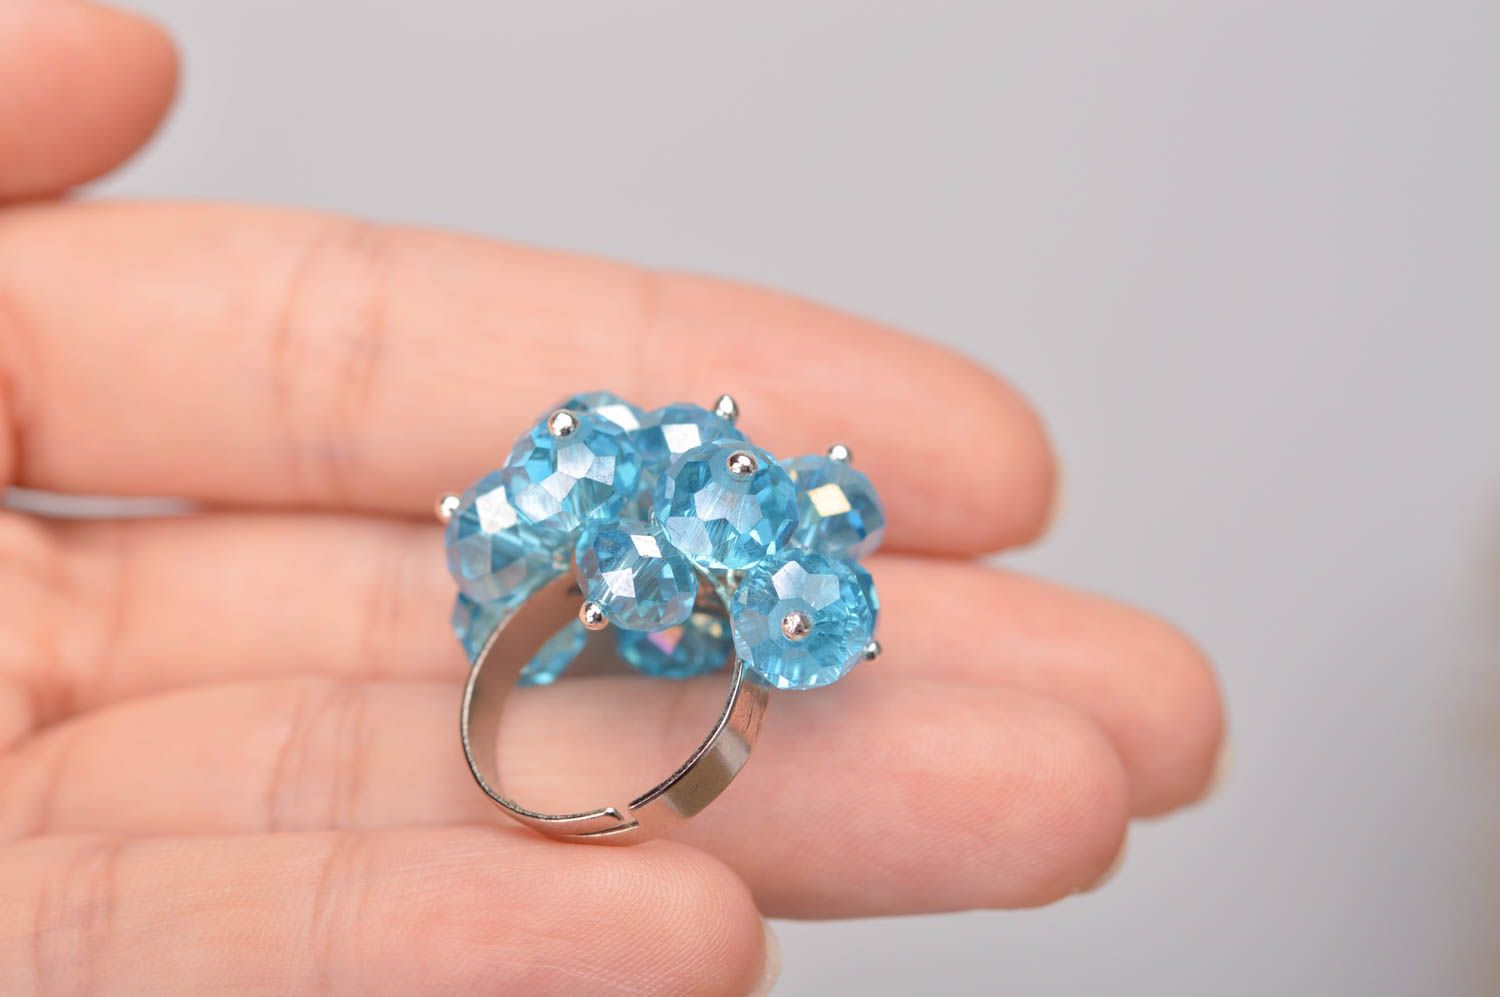 Голубое бестящее кольцо из стекляруса авторский аксессуар ручной работы фото 2